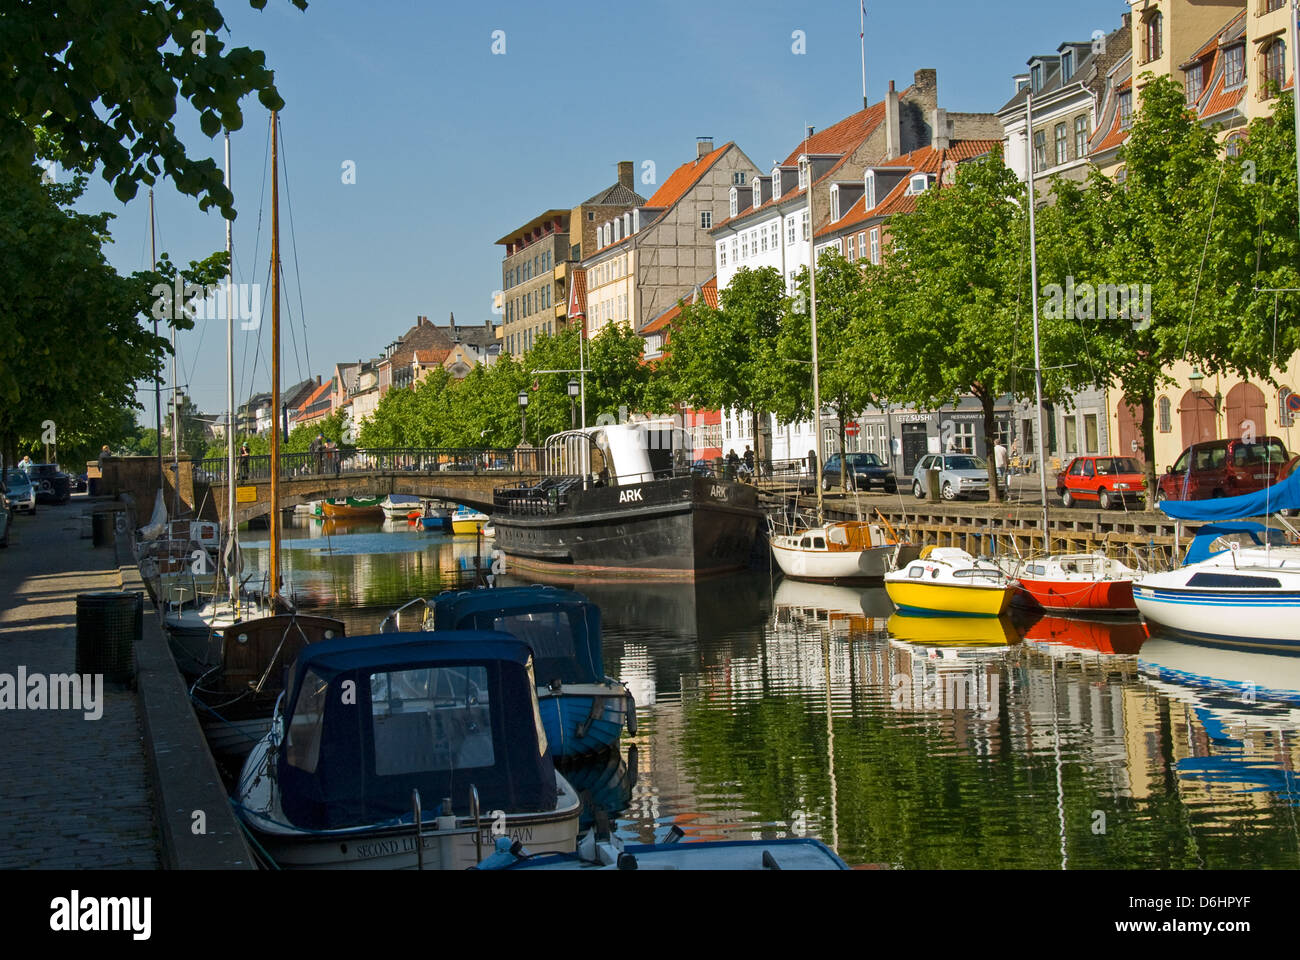 Christianshavn Canal, Copenhagen, Denmark Stock Photo